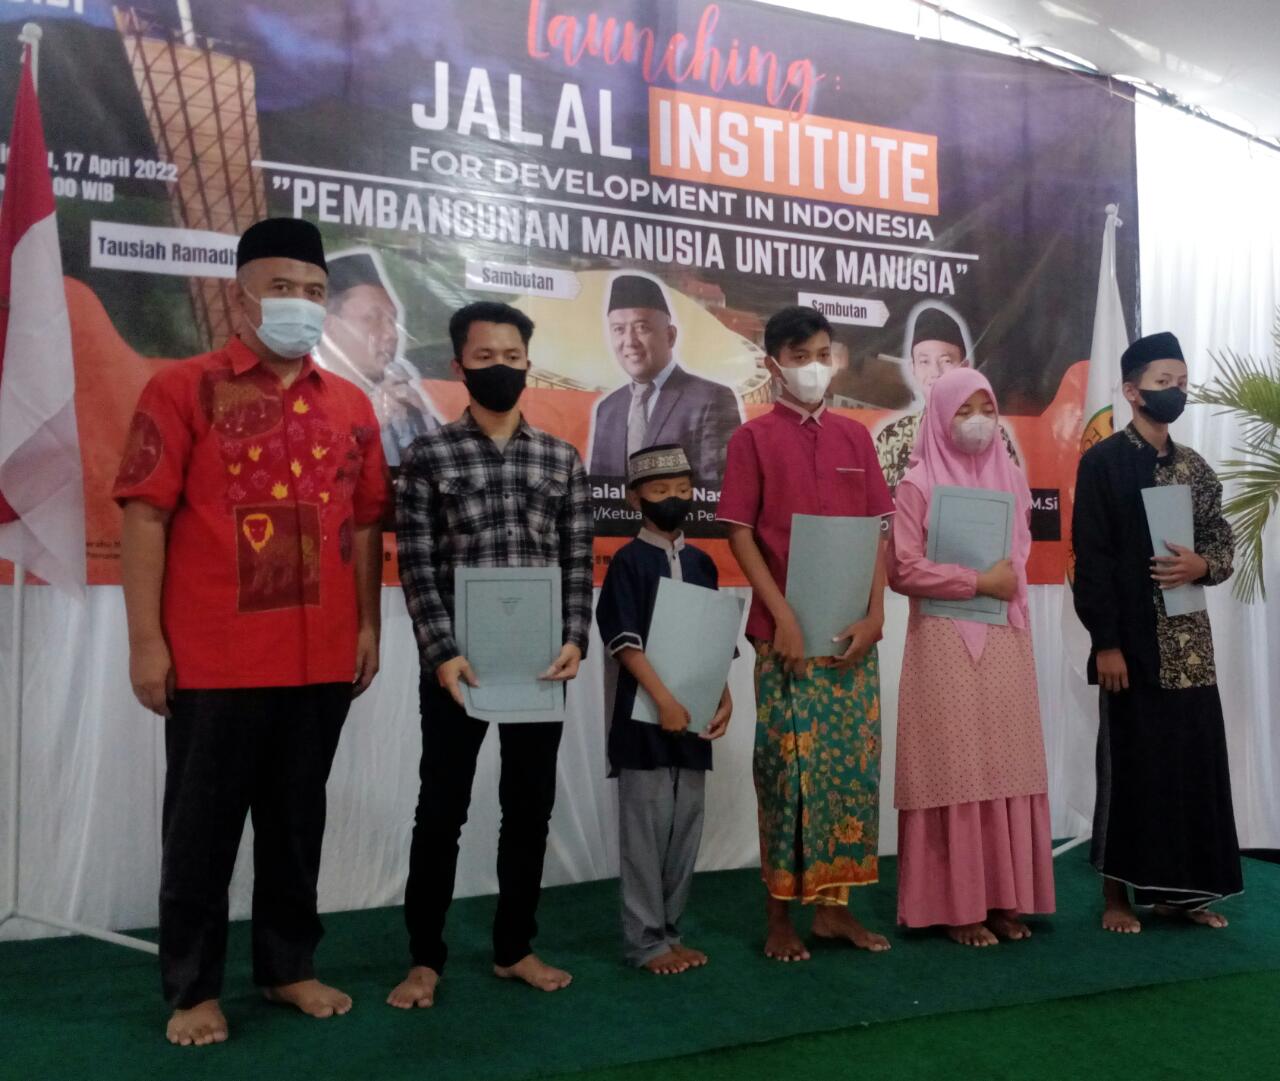 Launching JIDI (Jalal Institute For Development In Indonesia) Dengan Tema Pembangunan Manusia untuk Manusia